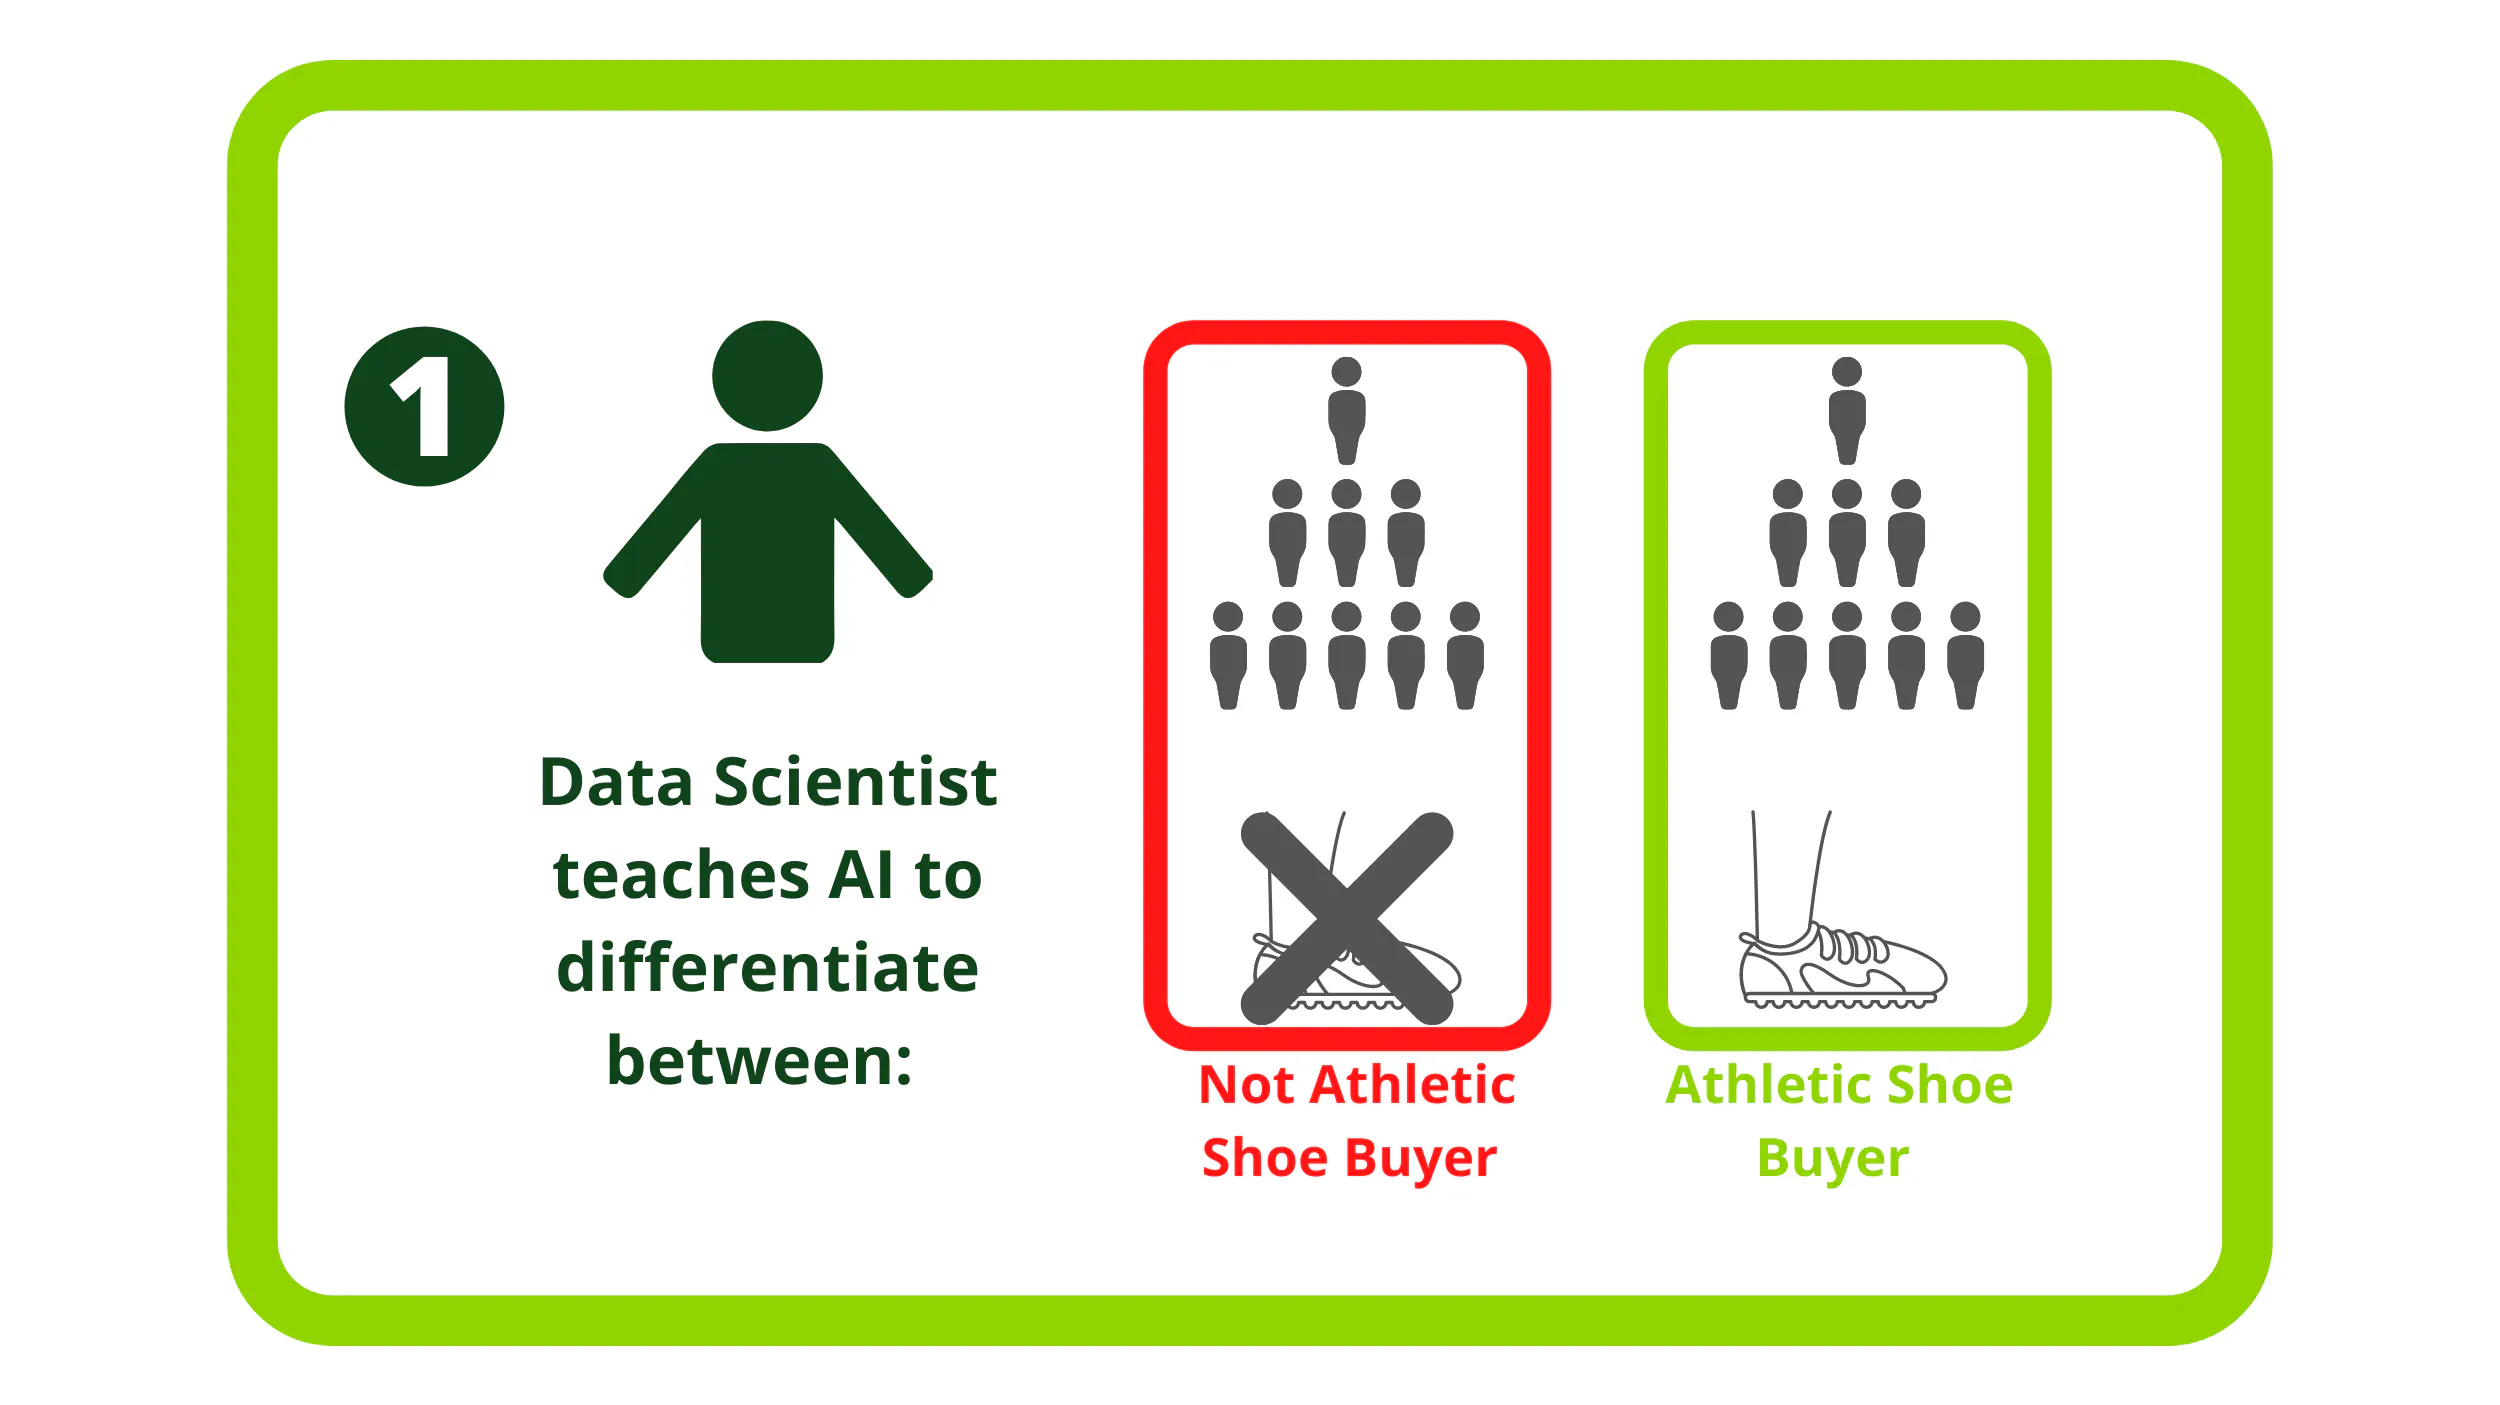 數據科學家教人工智慧區分運動鞋和非運動鞋買家